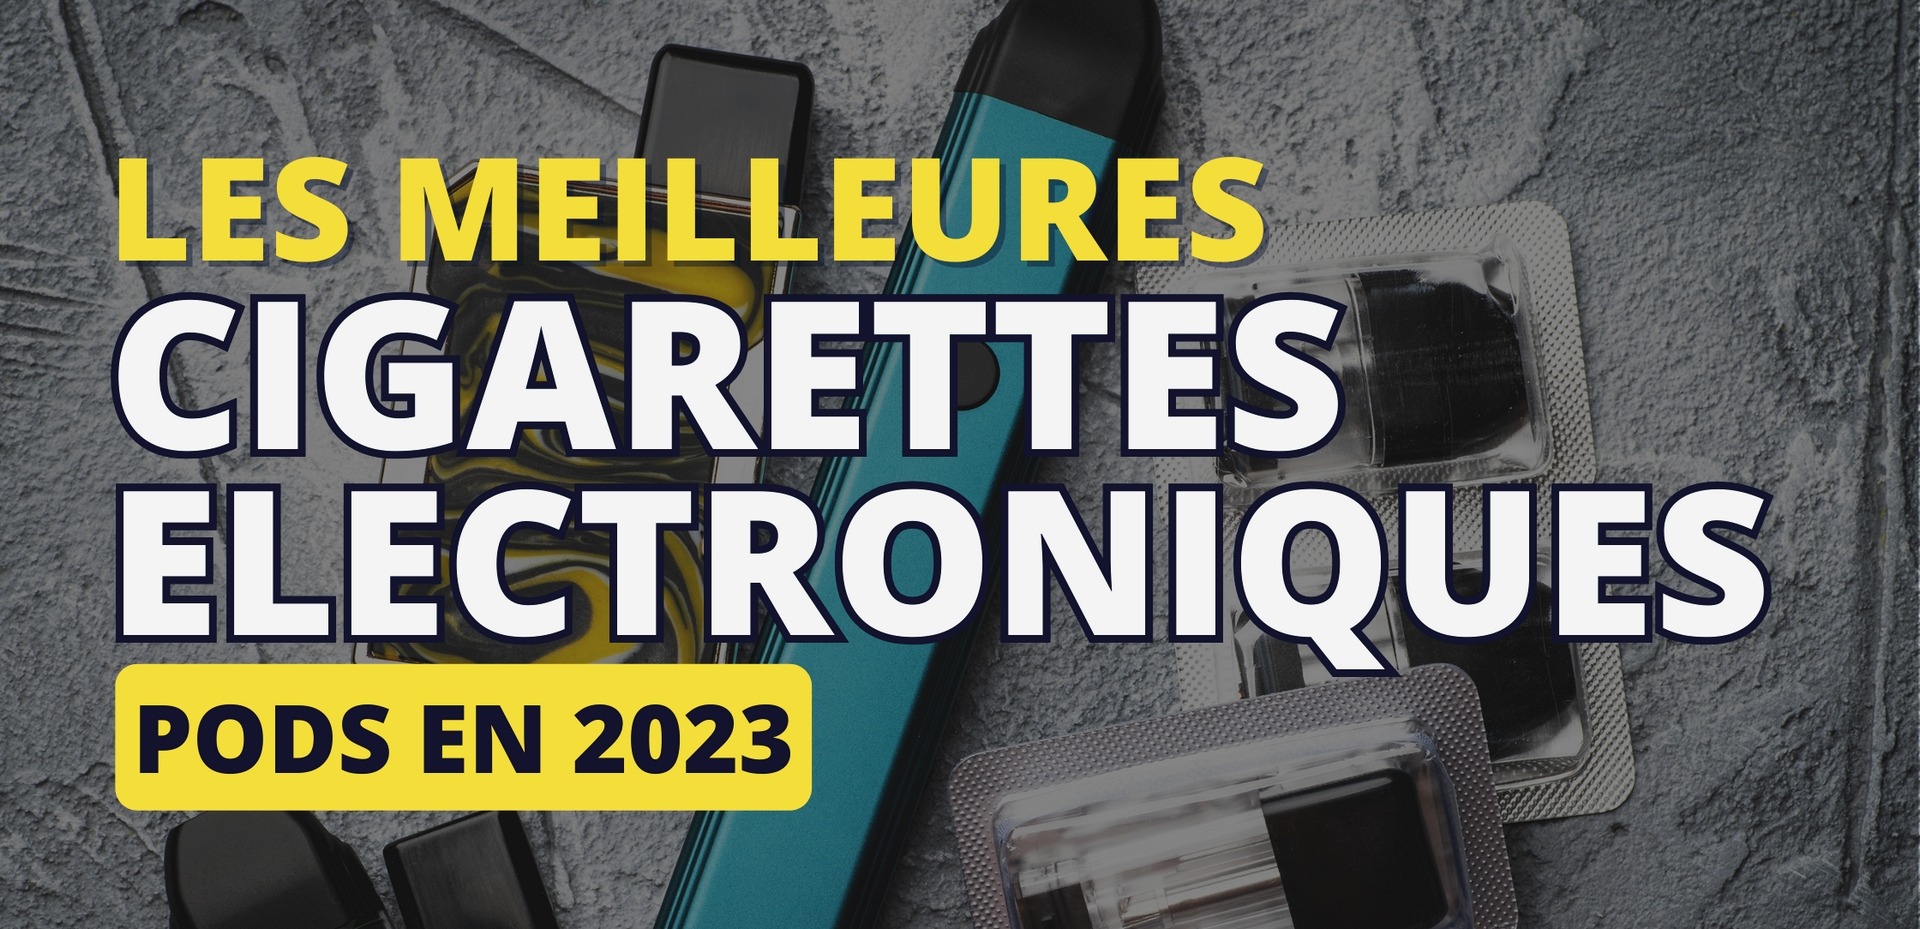 MEILLEURES CIGARETTES ELECTRONIQUES POUR DEBUTANTS 2023 2